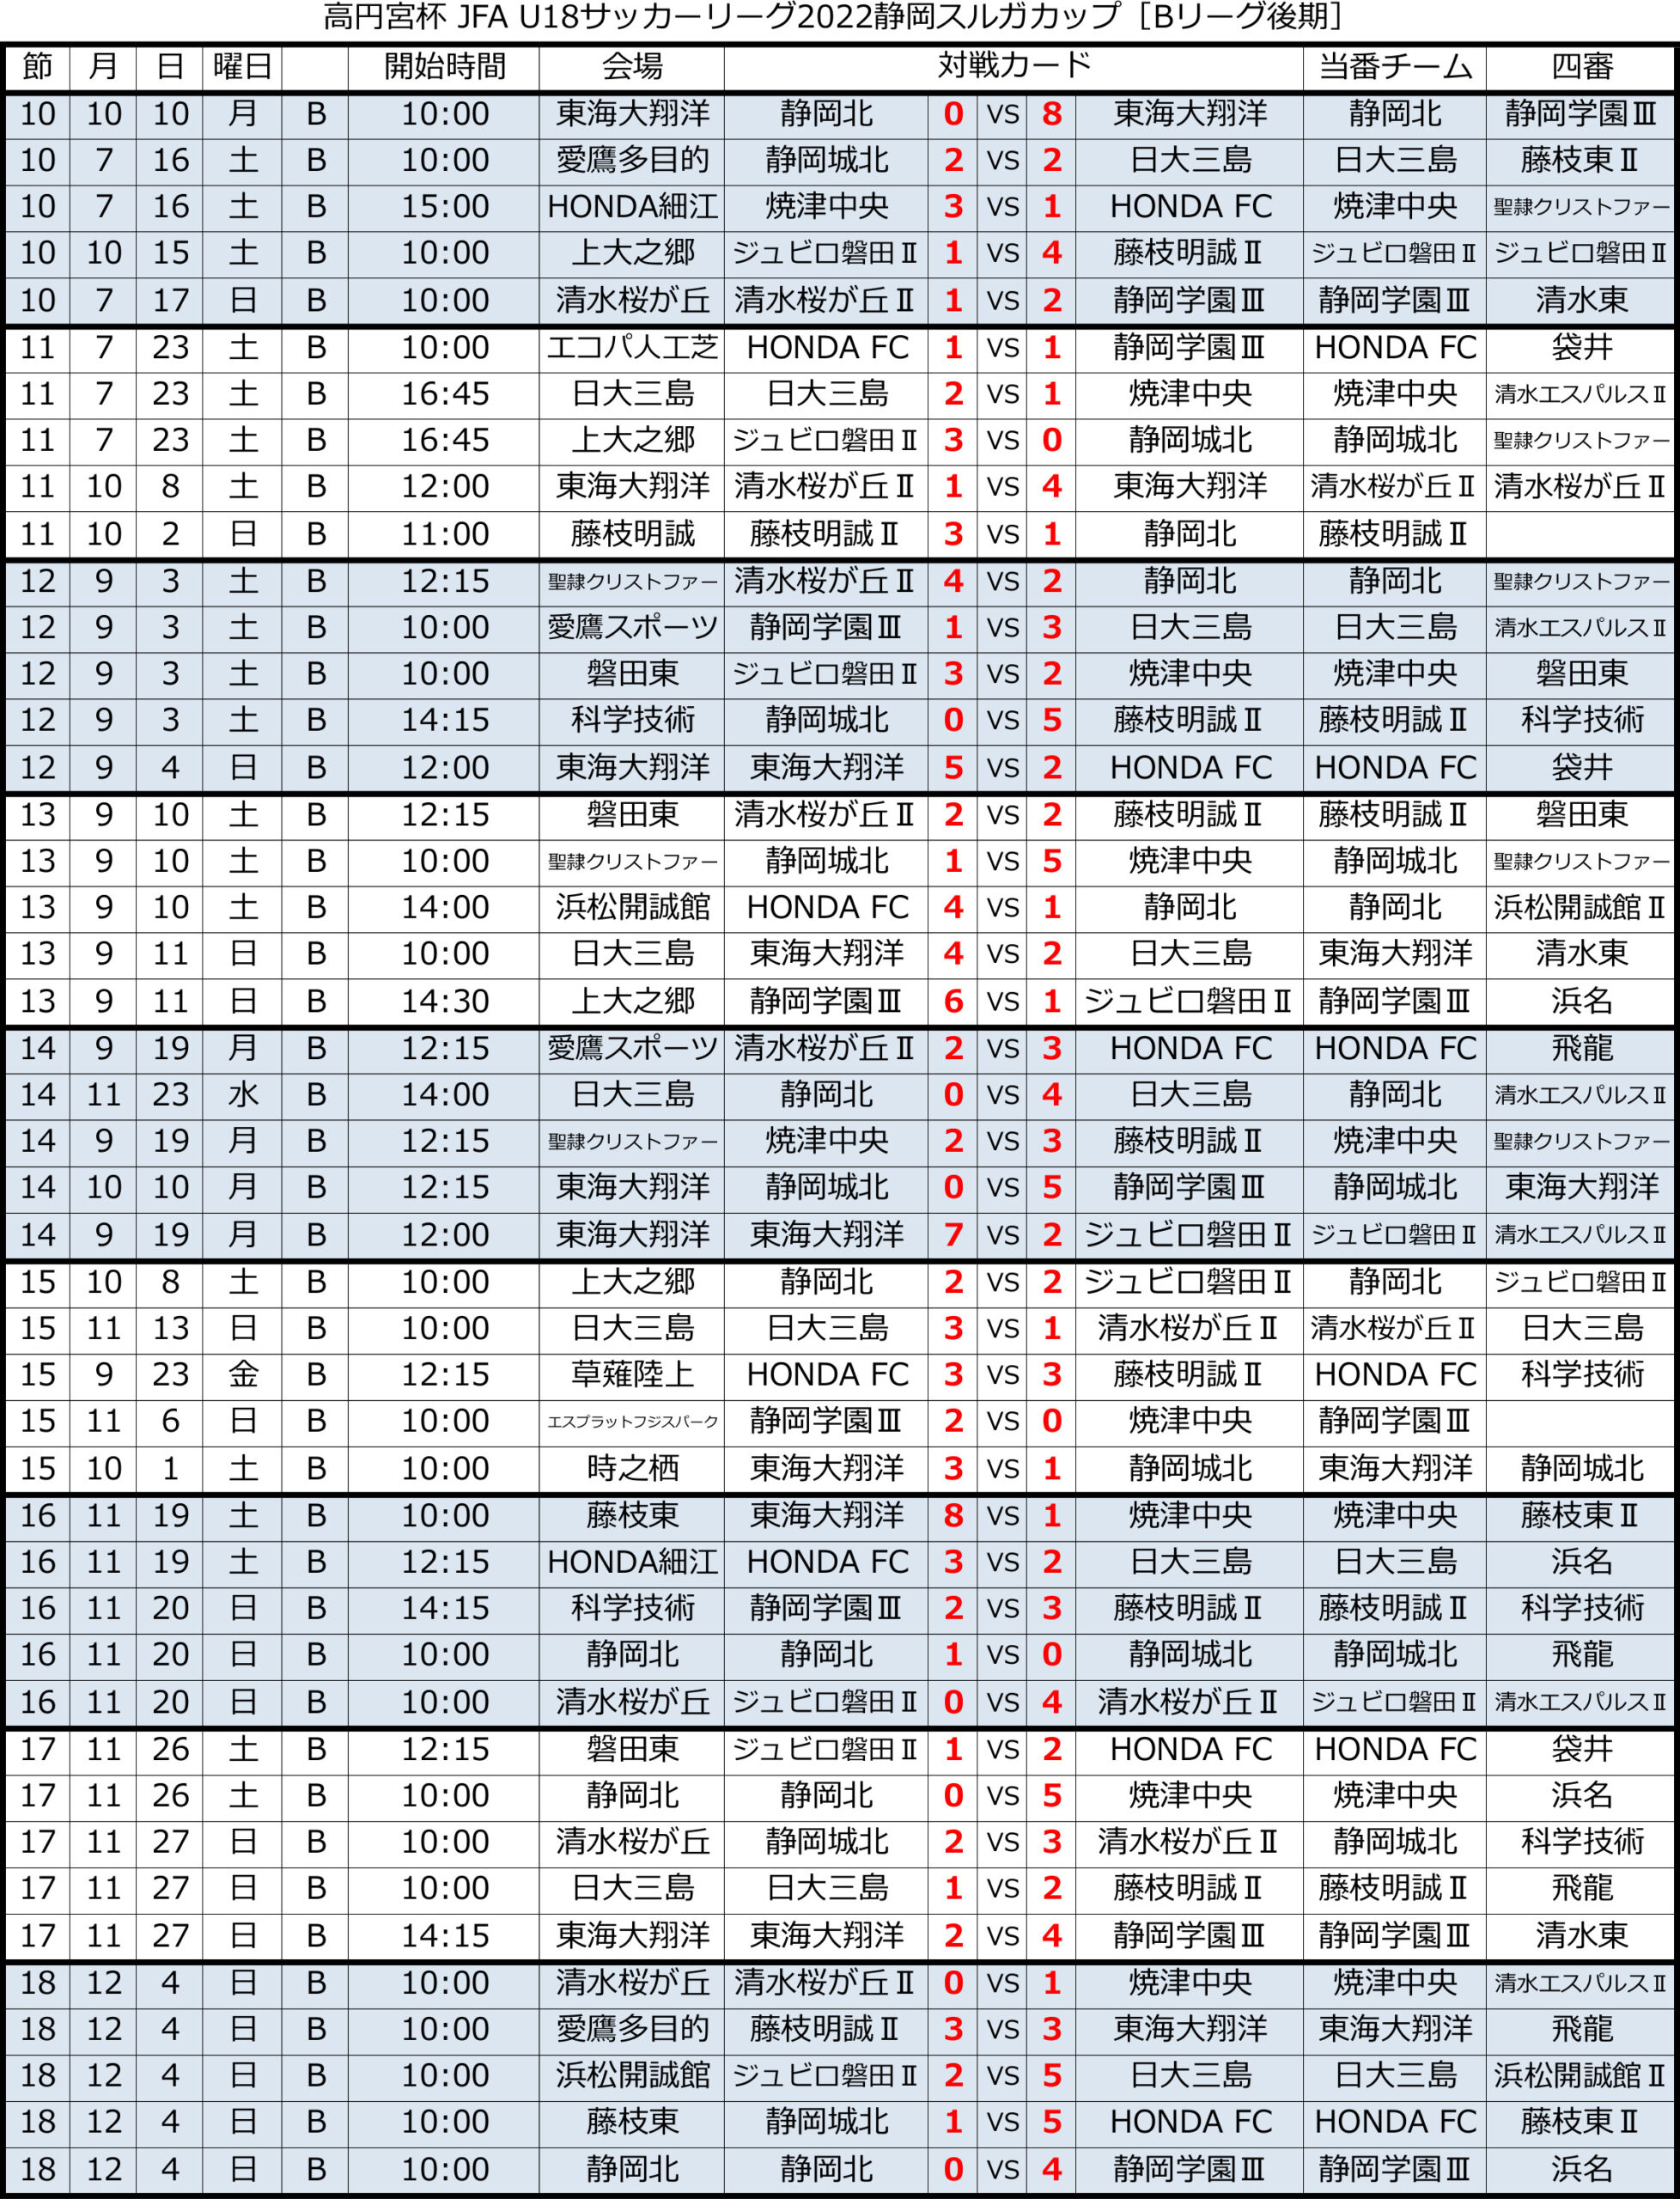 高円宮杯 JFA U-18サッカーリーグ2022 静岡 　Bリーグ後期 トーナメント表